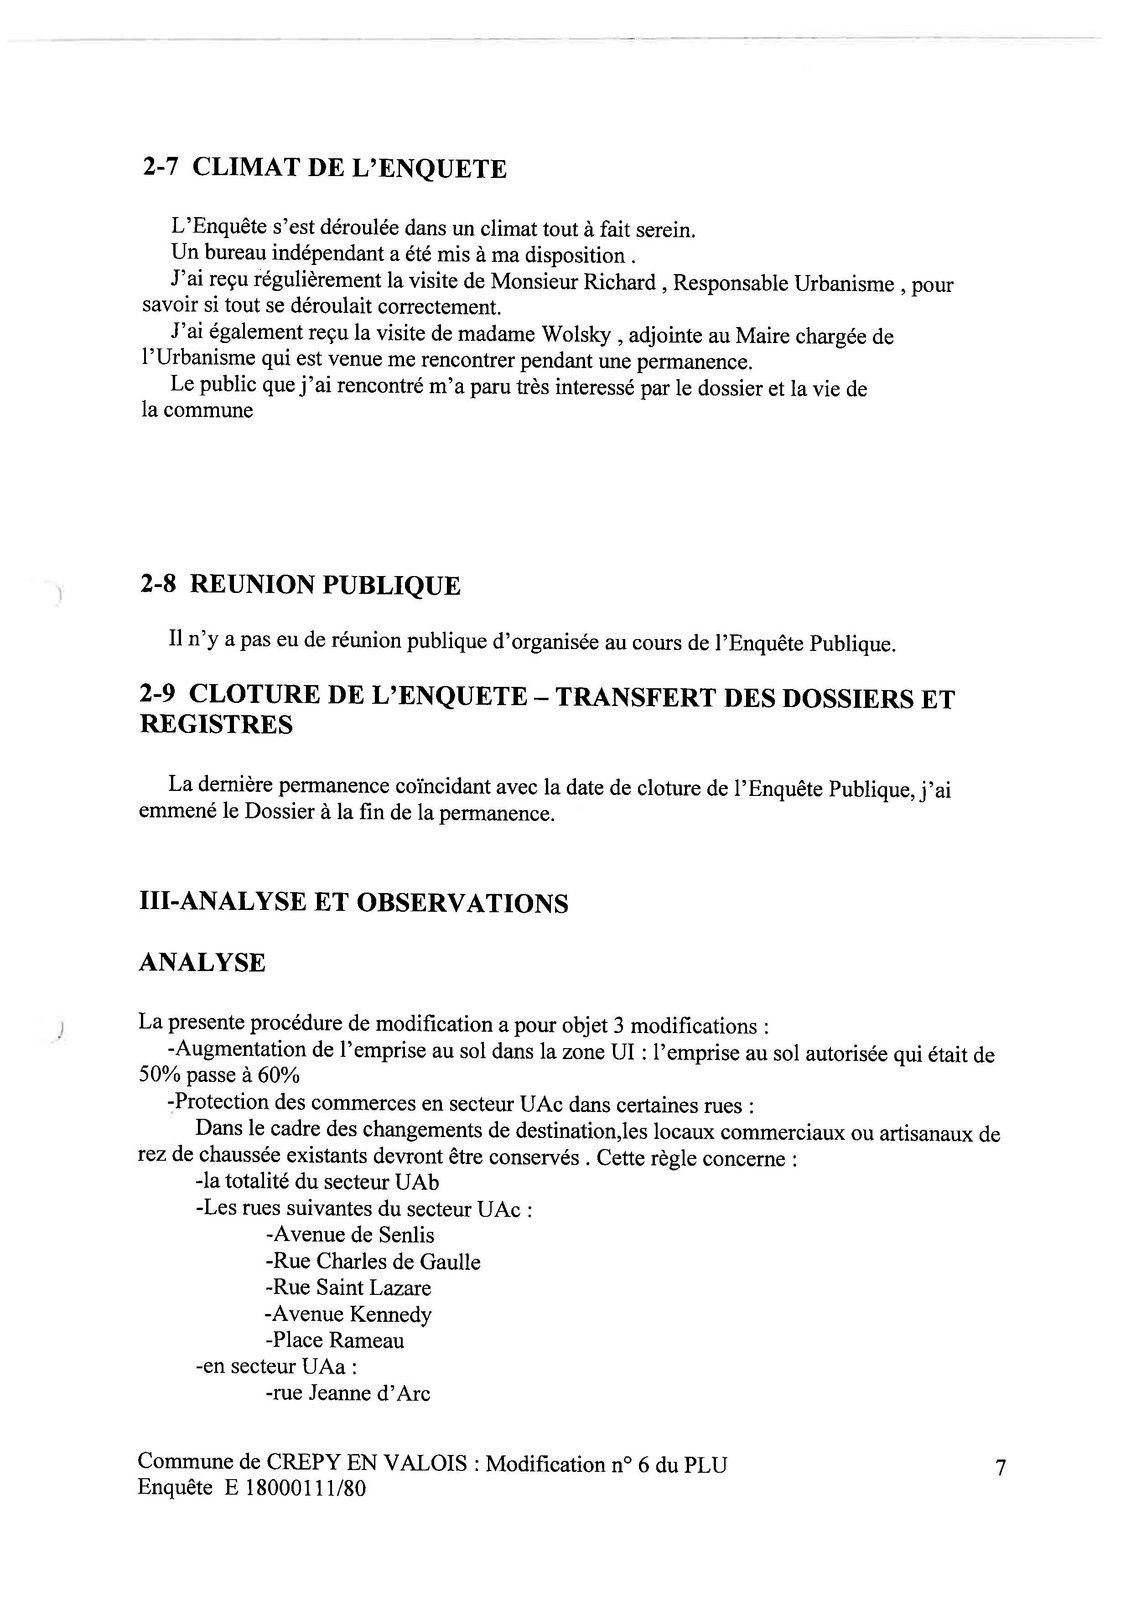 Communauté de communes du pays de Valois : Modificatif n°6 du Plan Local d’Urbanisme de Crépy en Valois (PLU)